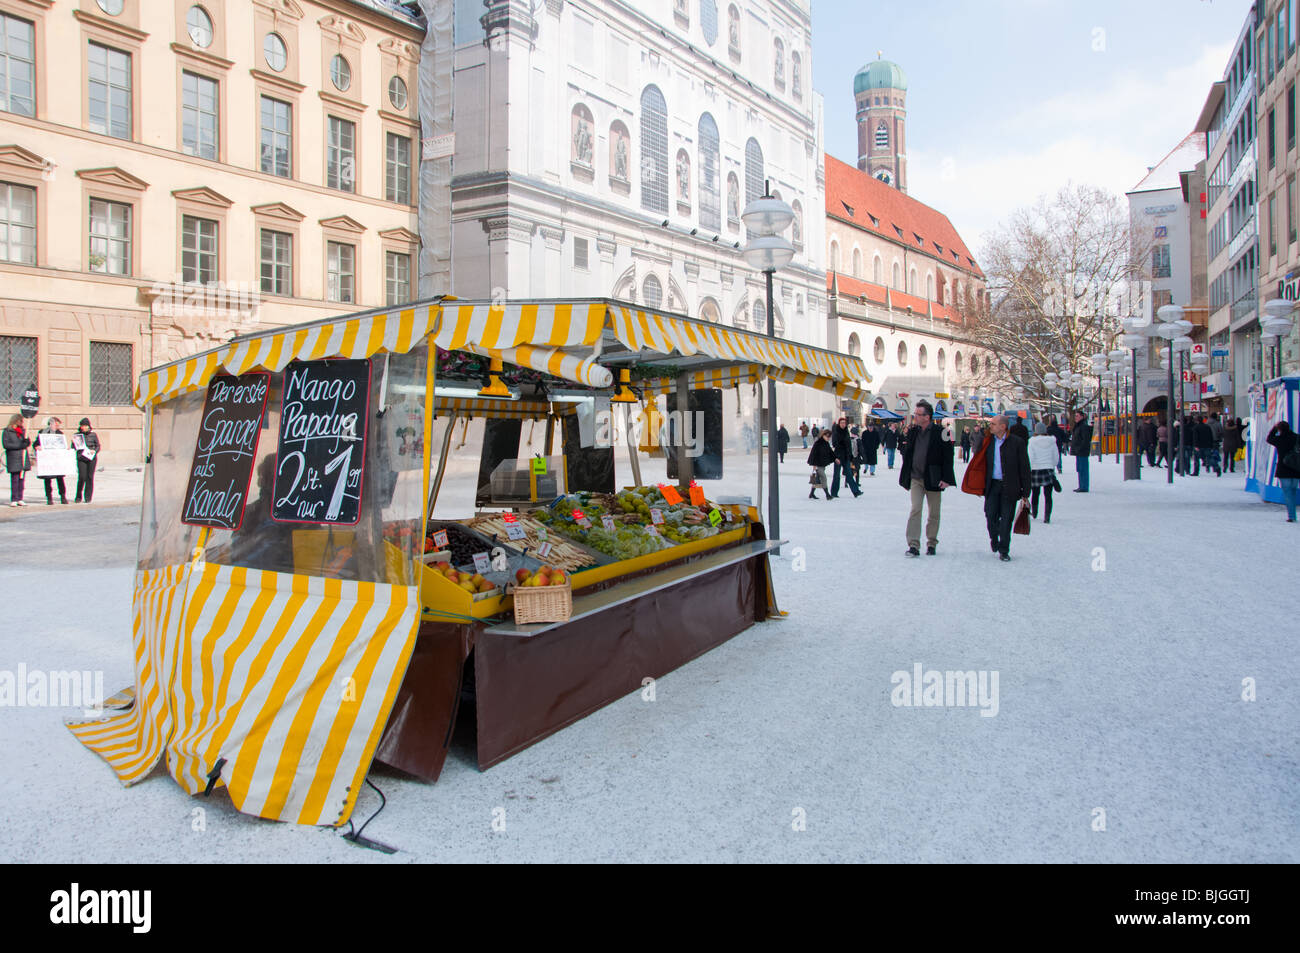 Venditore di frutta a Monaco di Baviera la principale arteria in inverno la neve. Germania Foto Stock